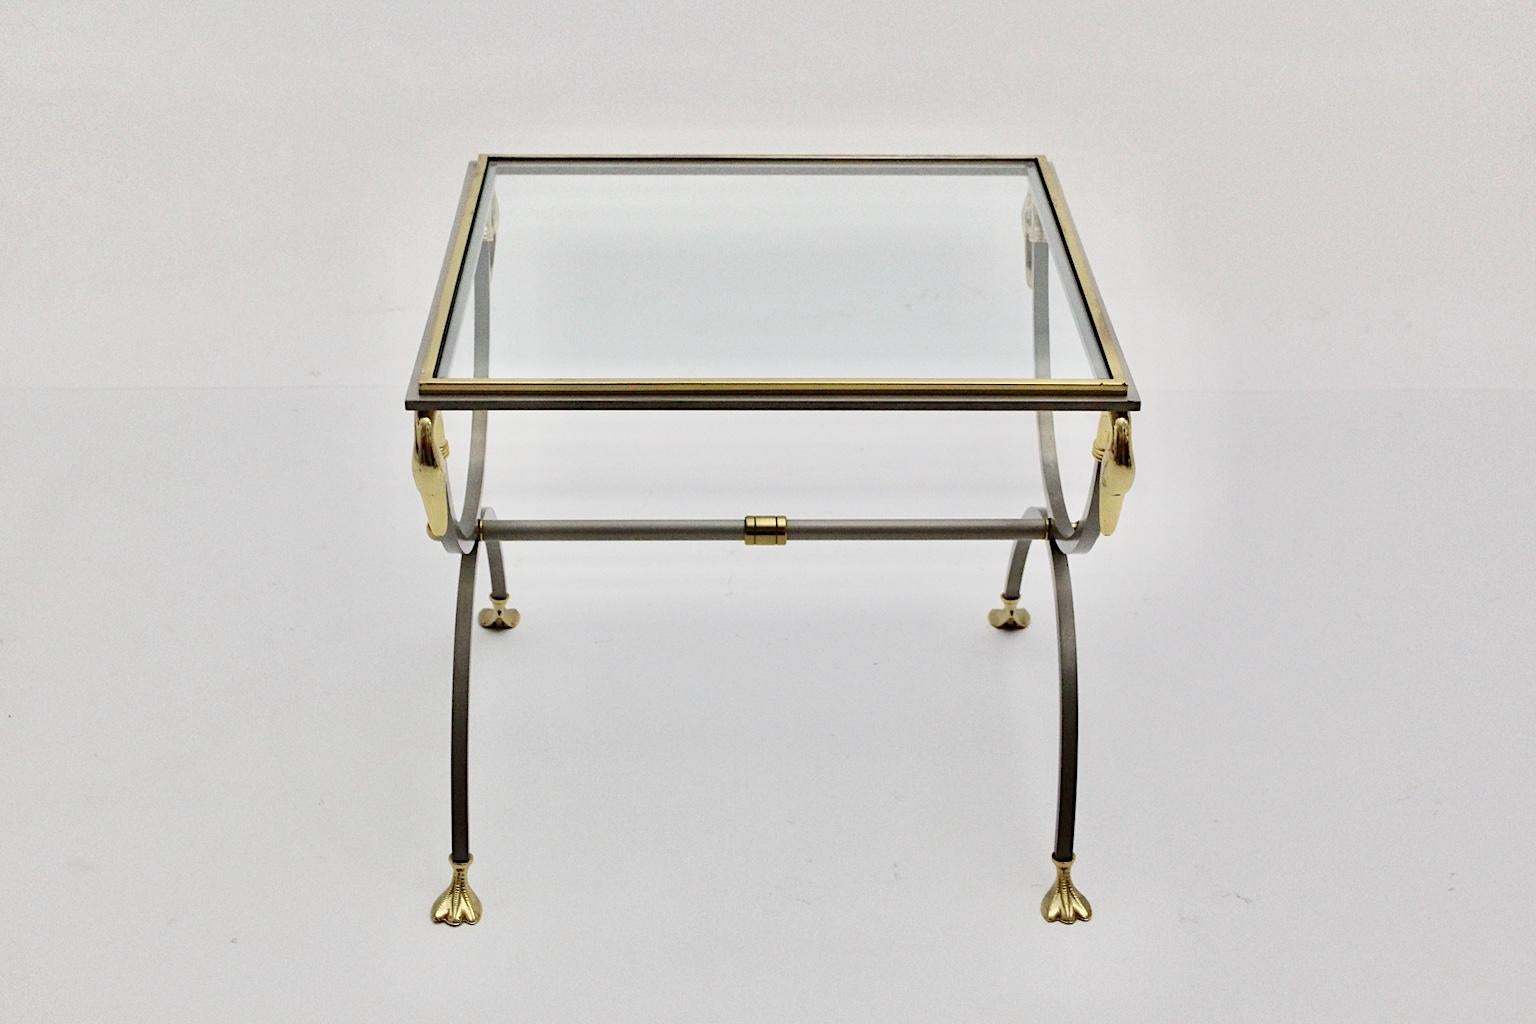 Fin du 20e siècle Maison Jansen table basse vintage en acier inoxydable doré, circa 1970, France en vente